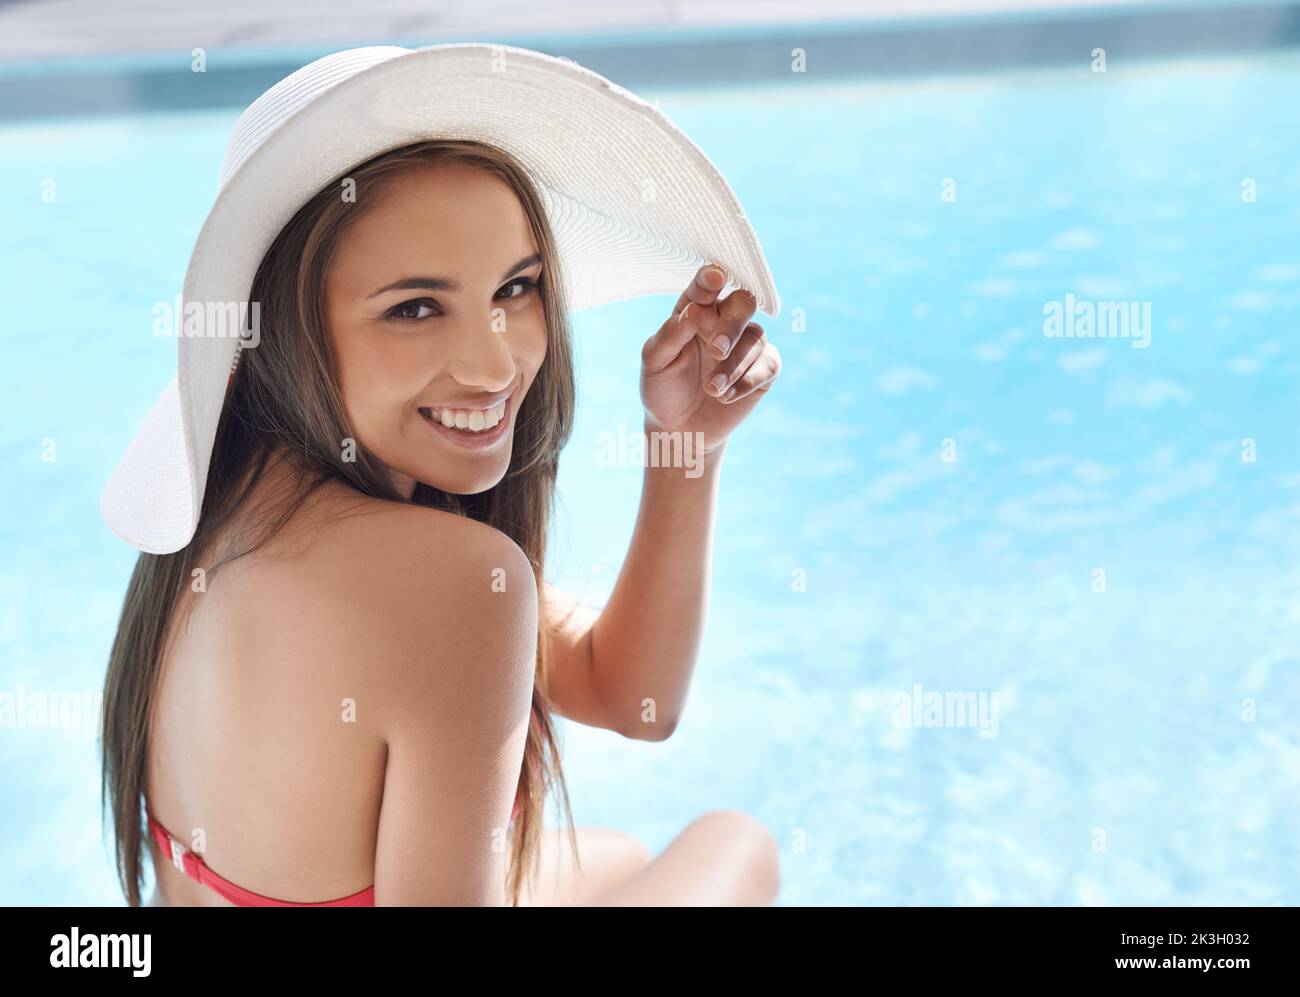 Der Pool ist der einzige Ort, an dem man sein sollte. Porträt einer lächelnden jungen Frau, die mit einem Sonnenhut an einem Pool sitzt. Stockfoto